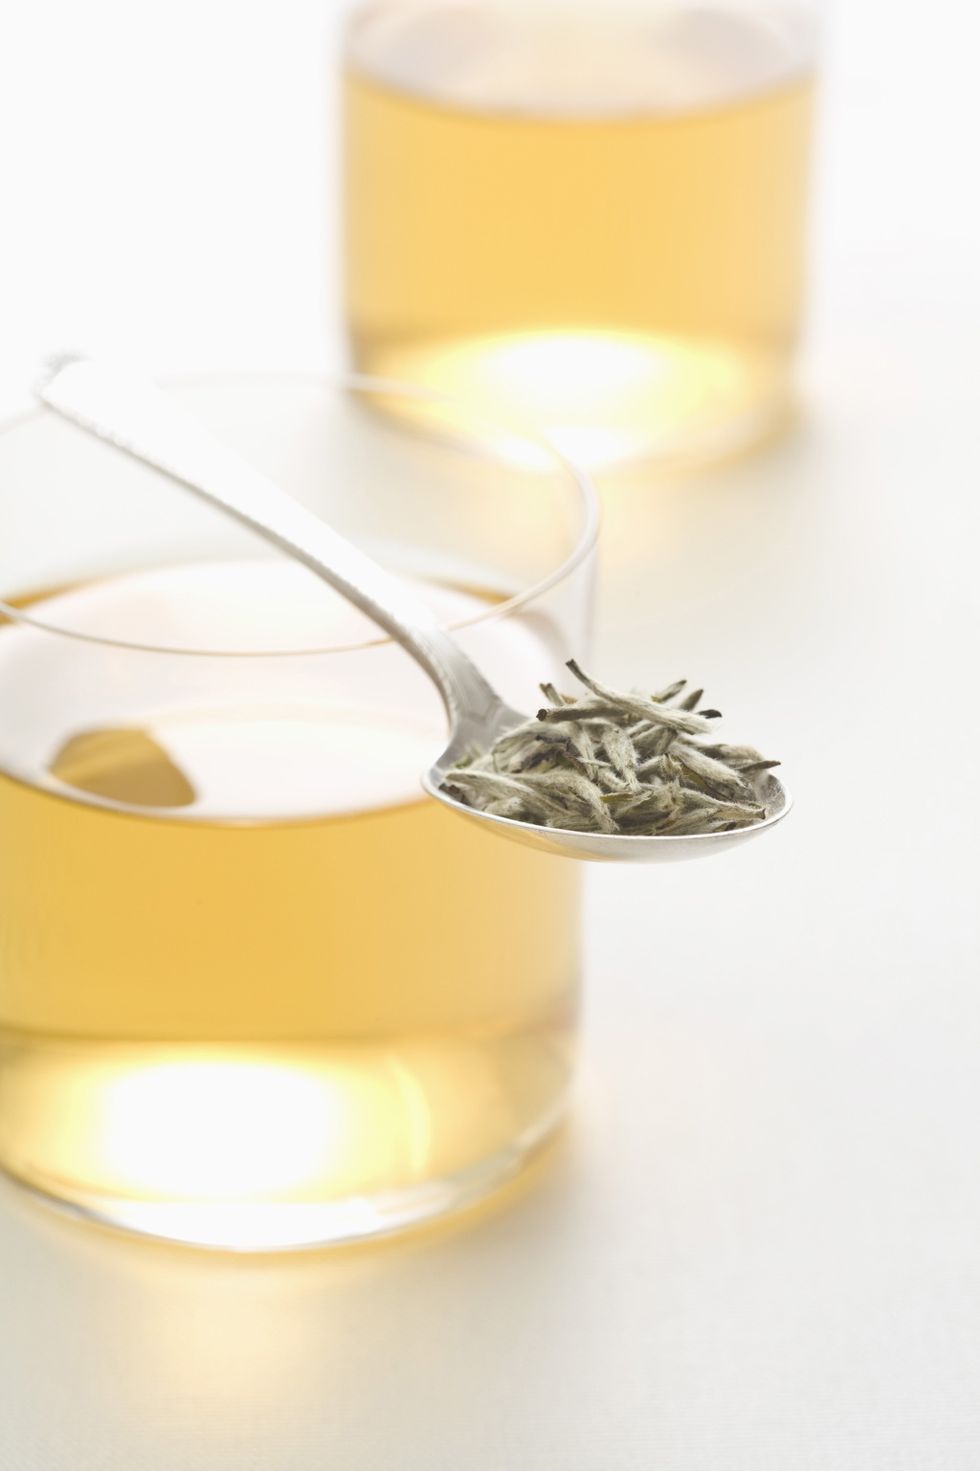 <p>El <strong>té blanco</strong> es la variedad menos oxidada del té. Para elaborarlo se utilizan yemas y hojas jóvenes de la planta, que son secadas al sol para evitar que se produzca una fermentación. Se trata de un té <strong>bajo en teína y alto en catequinas</strong>, un tipo de antioxidante con propiedades antiinflamatorias y una posible acción protectora del sistema cardiovascular. Según algunos estudios, el té blanco tiene además <strong>propiedades antibacterianas</strong>, lo que le convertiría en un buen aliado para evitar ciertos tipos de enfermedad y problemas como la placa dental.</p>